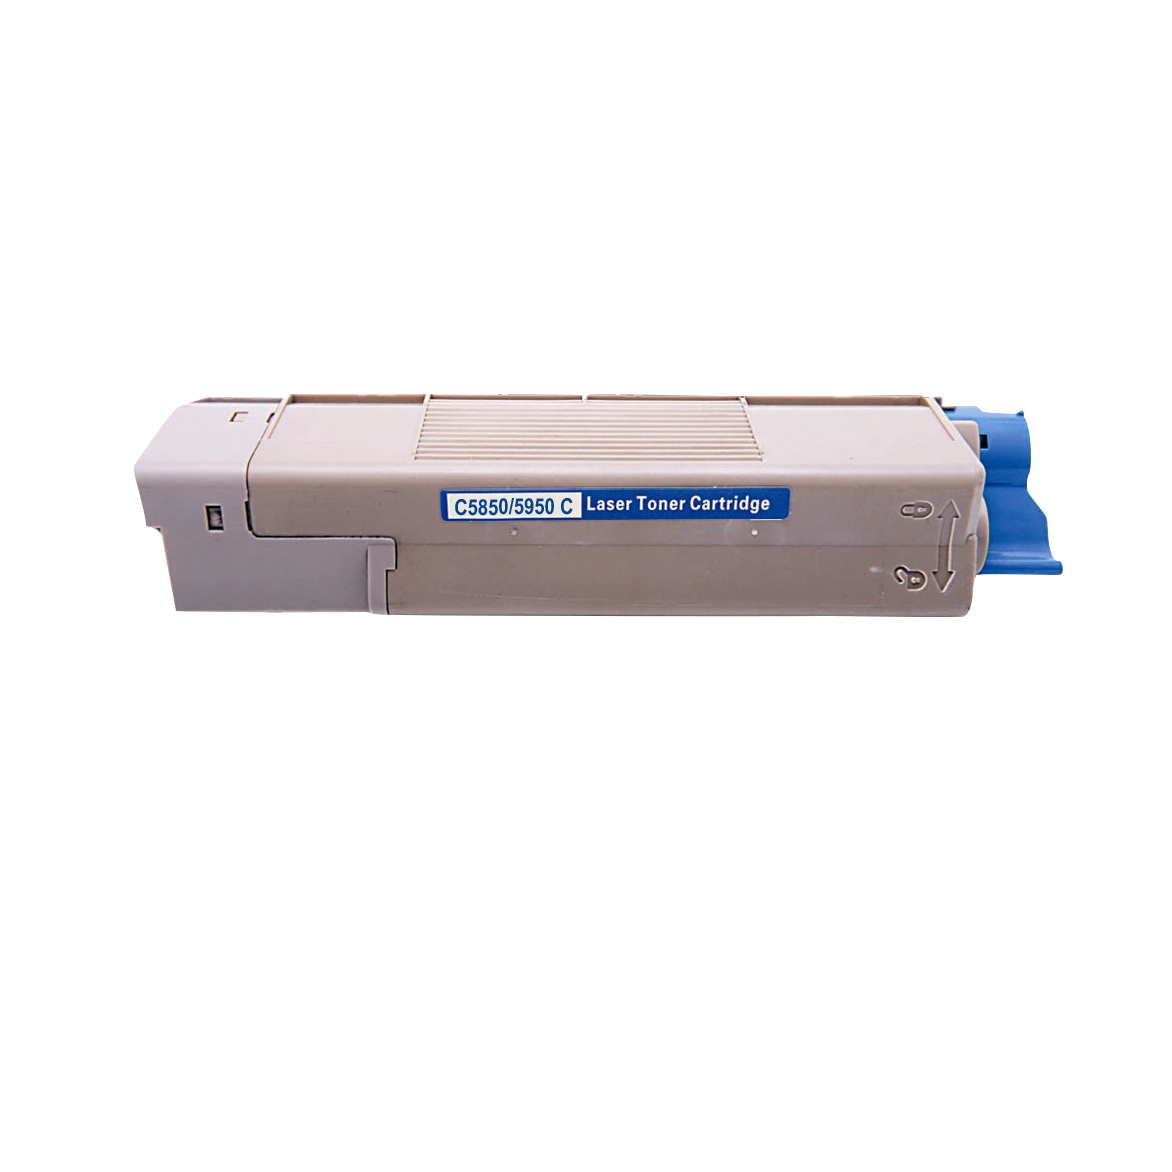 OKI C5850/5950/MC560 C Lasertoner, Cyan, kompatibel (6000 sider)